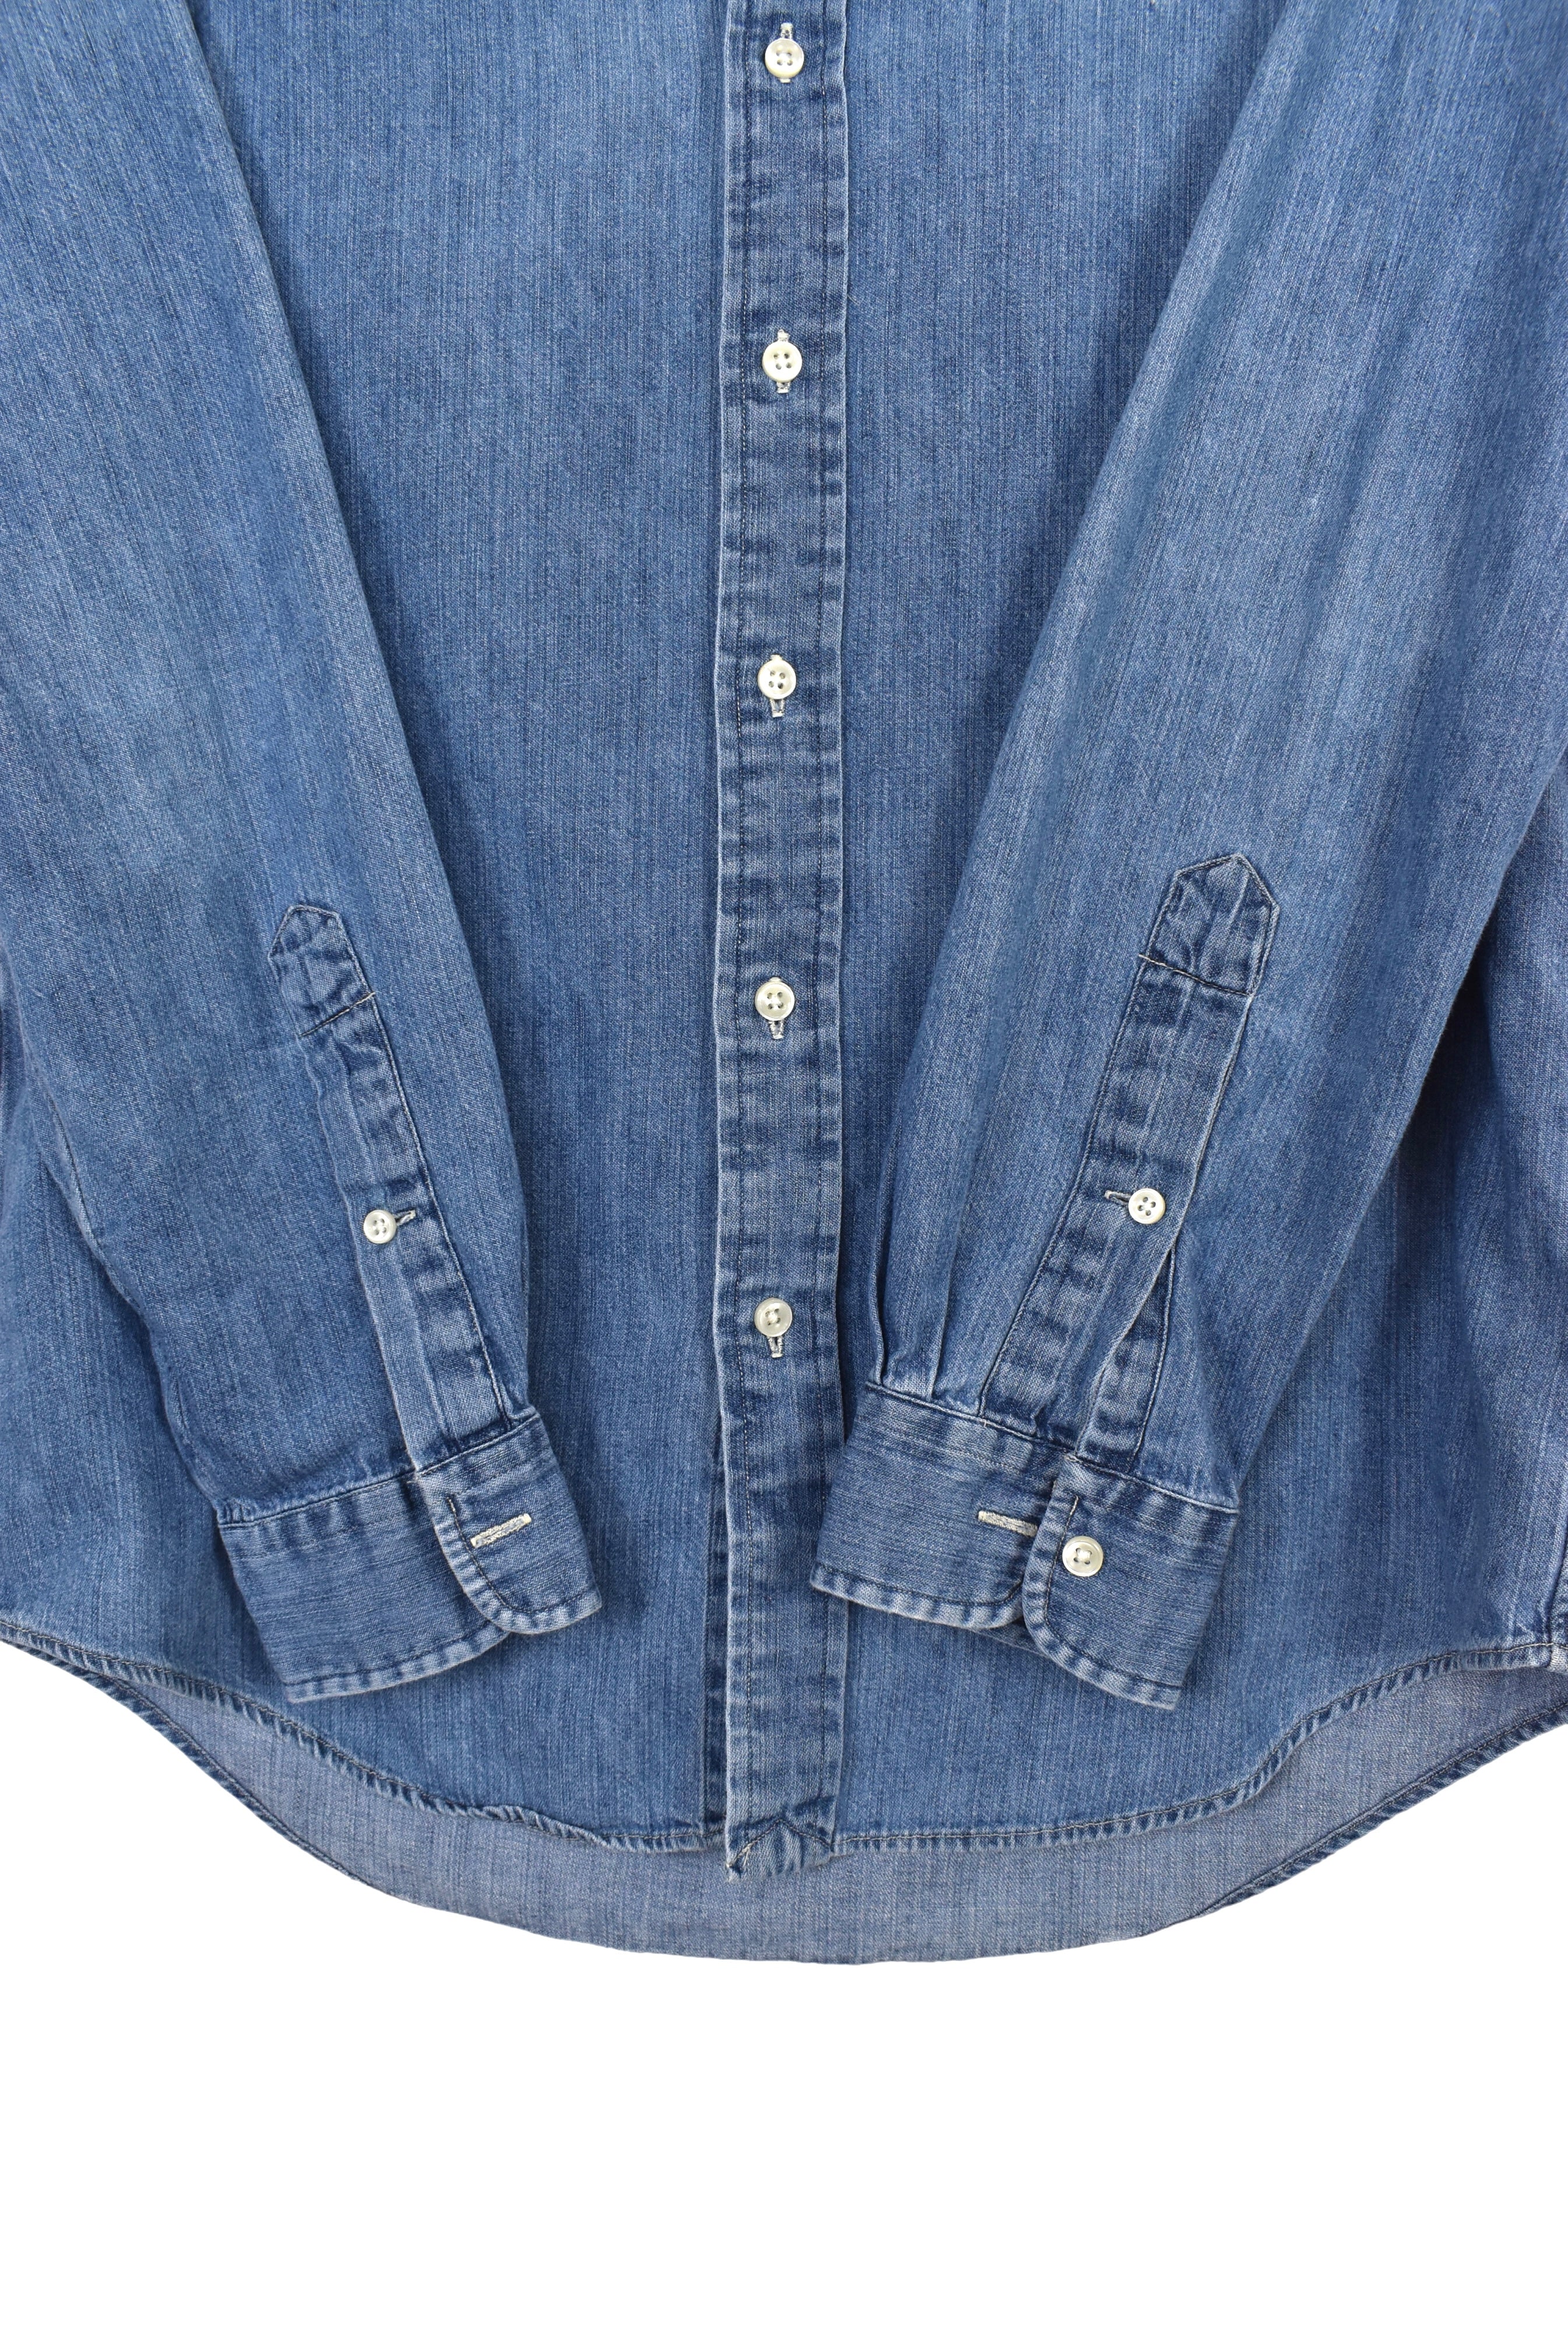 Vintage Ralph Lauren shirt (S), denim embroidered button up